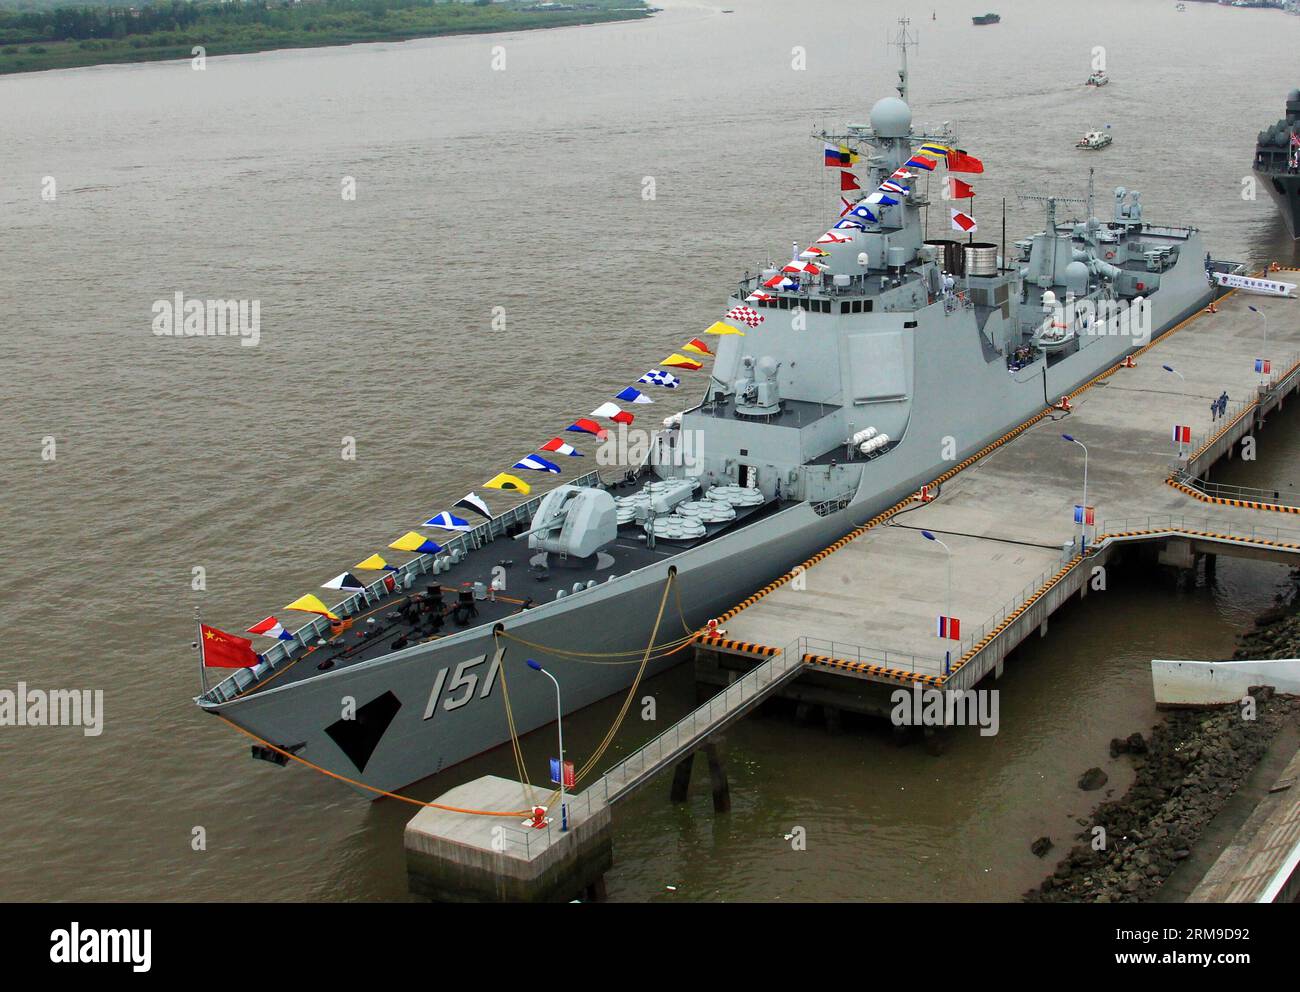 (140519) -- SHANGHAI, 19 mai 2014 (Xinhua) -- des drapeaux flottent sur le destroyer de missiles Zhengzhou à Shanghai, dans l'est de la Chine, le 19 mai 2014. Les forces navales chinoises et russes ont tenu des activités d'échange lundi pour améliorer la communication mutuelle. Le forage conjoint Sea-2014 aura lieu dans la partie nord de la mer de Chine orientale du 20 au 26 mai. Il s agira du troisième exercice de ce type après des exercices conjoints au large des côtes de l extrême-Orient russe en juillet 2013 et de la mer jaune en avril 2012. (Xinhua/Zha Chunming) (zc) CHINE-SHANGHAI-FORAGE NAVAL CONJOINT-VISITE MUTUELLE (CN) PUBLICATIONxNOTxINxCHN Shanghai mai 19 Banque D'Images